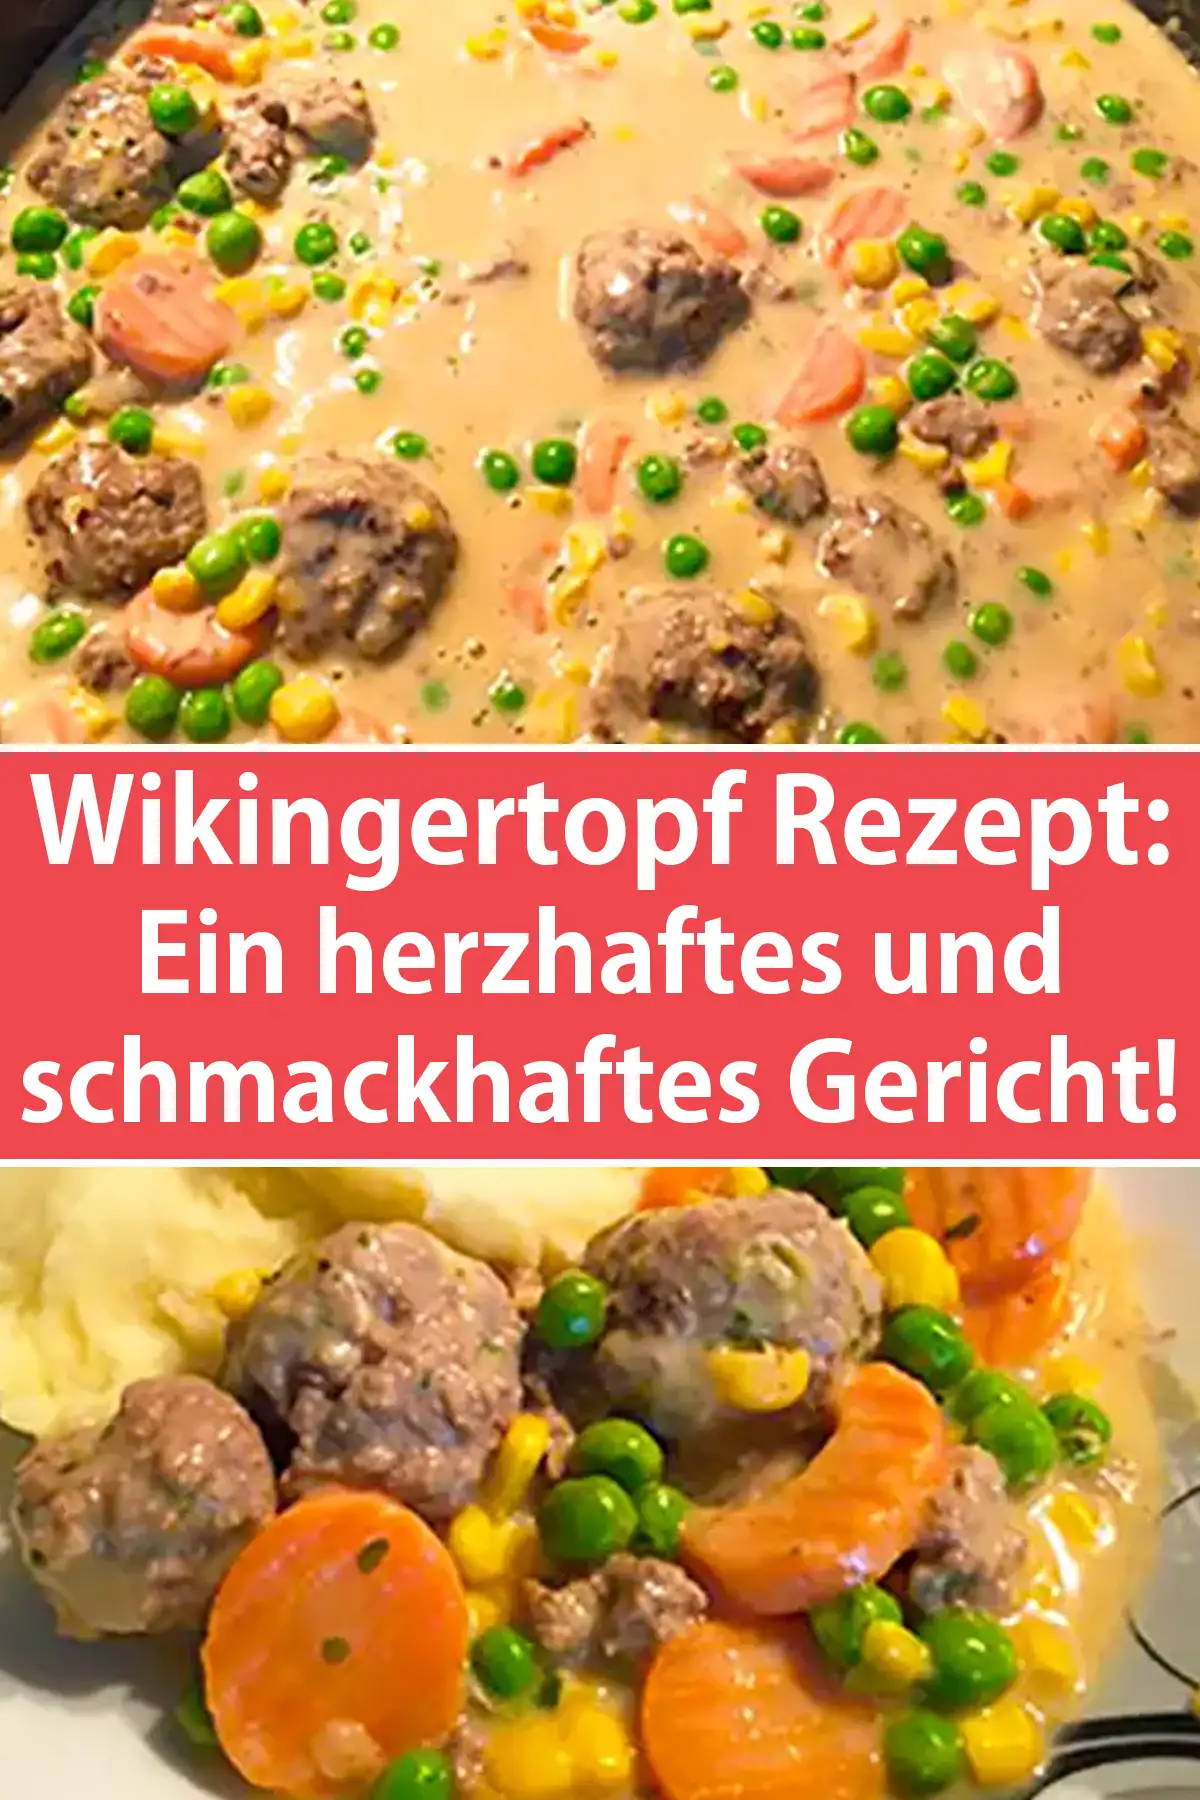 Wikingertopf Rezept - Ein herzhaftes und schmackhaftes Gericht!